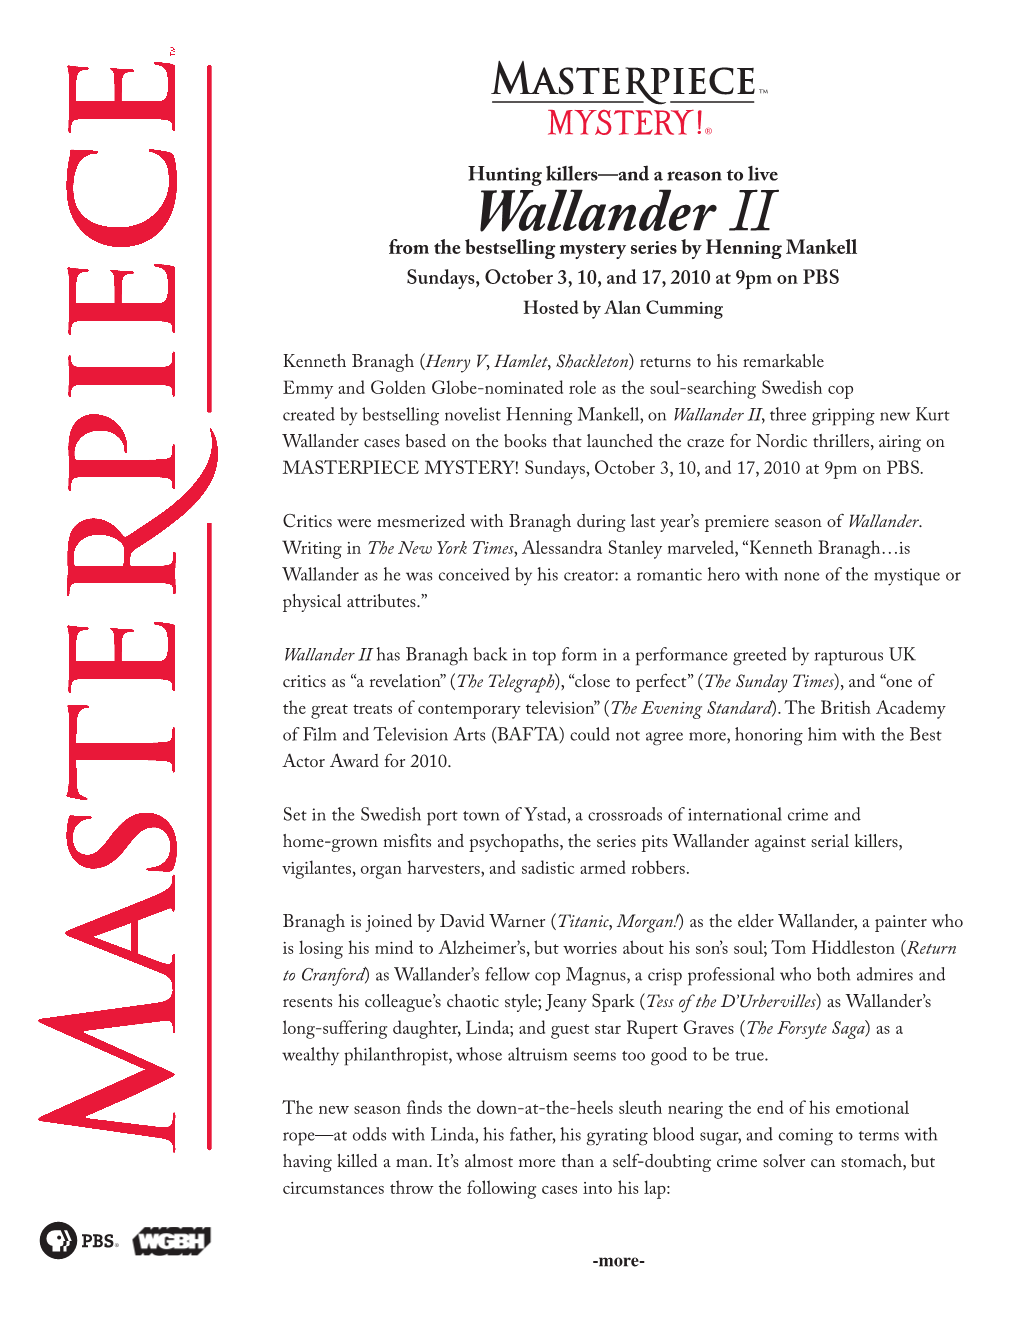 Wallander II